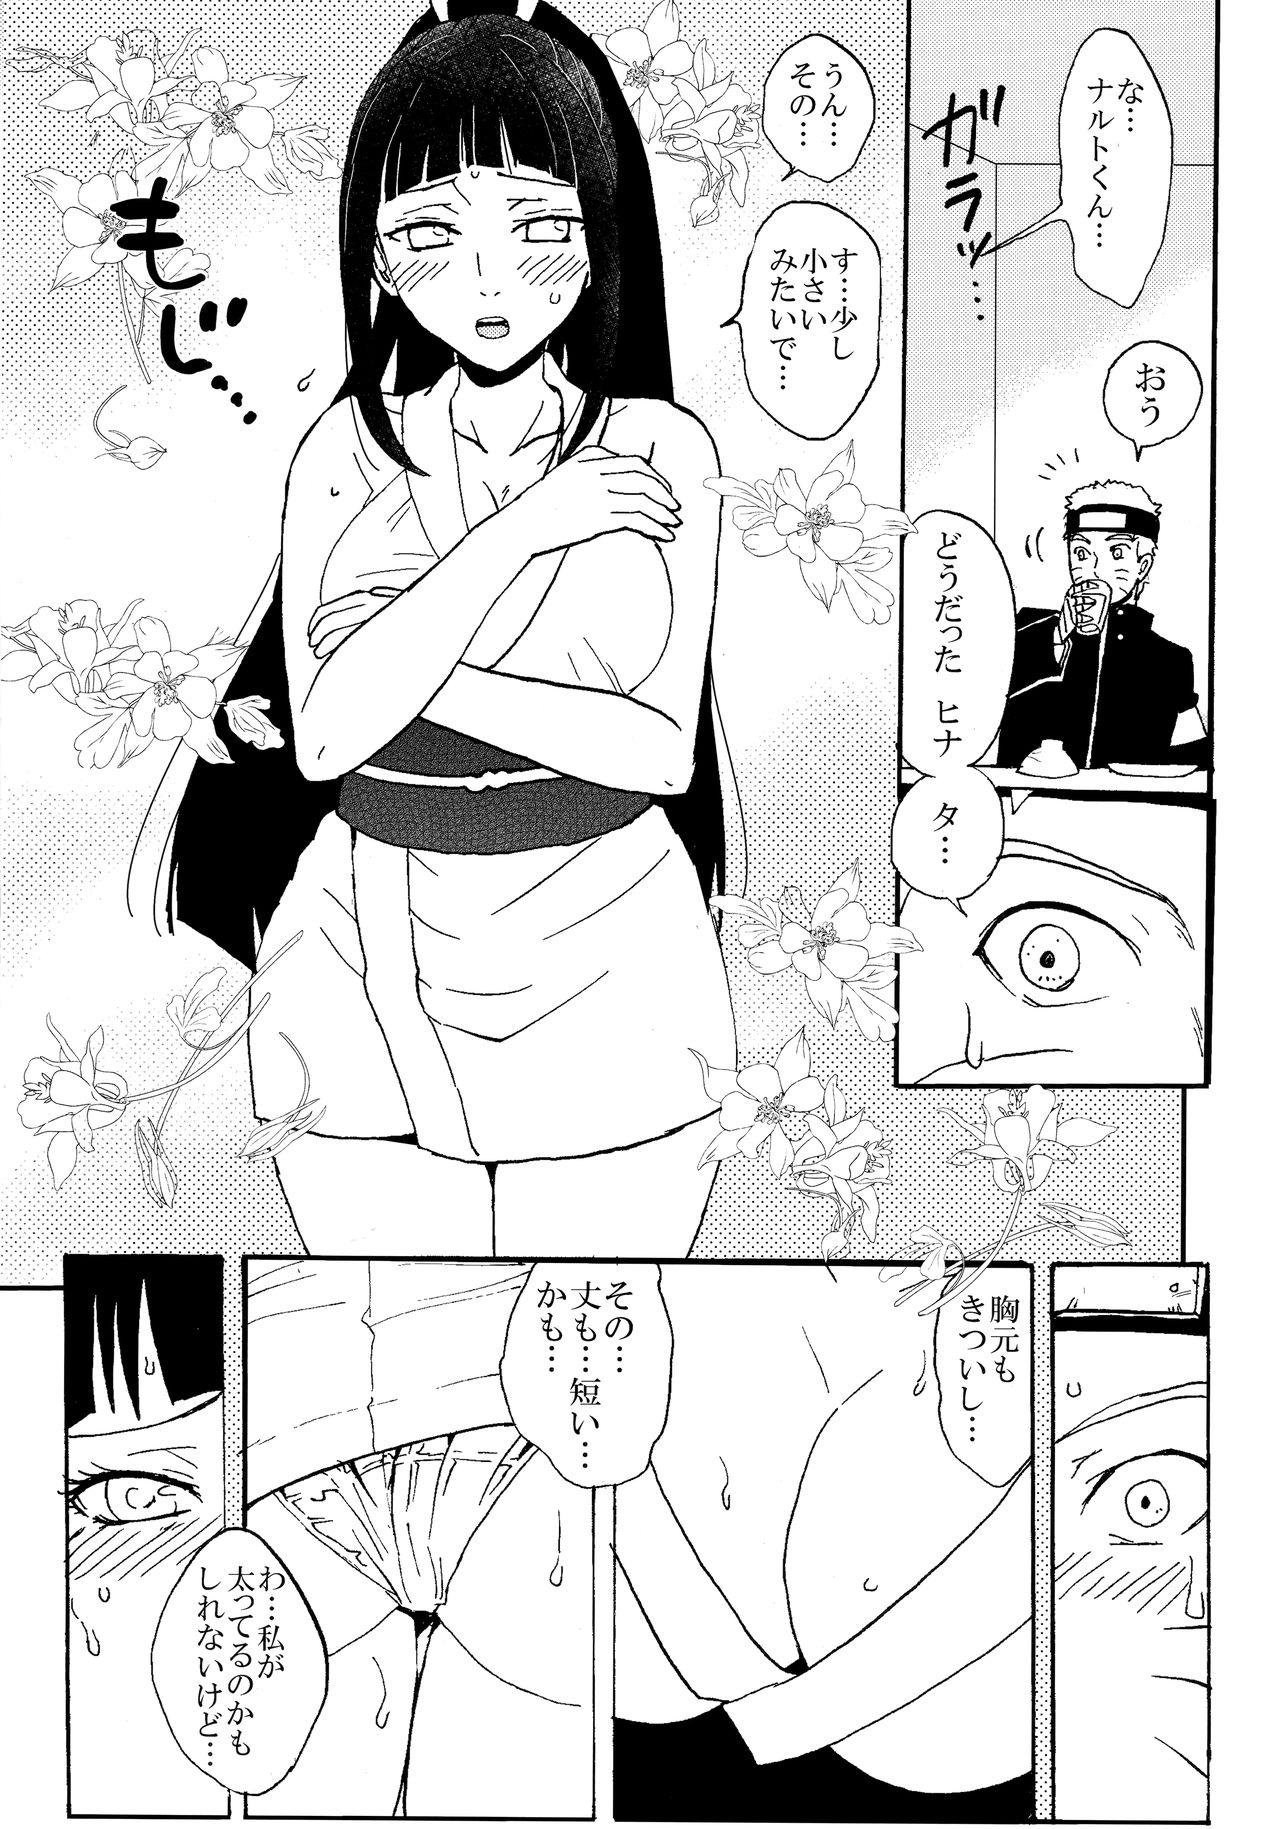 18 Year Old Porn Shinkon Hinata no Kunoichi Cosplay datteba yo! - Naruto Bitch - Page 4